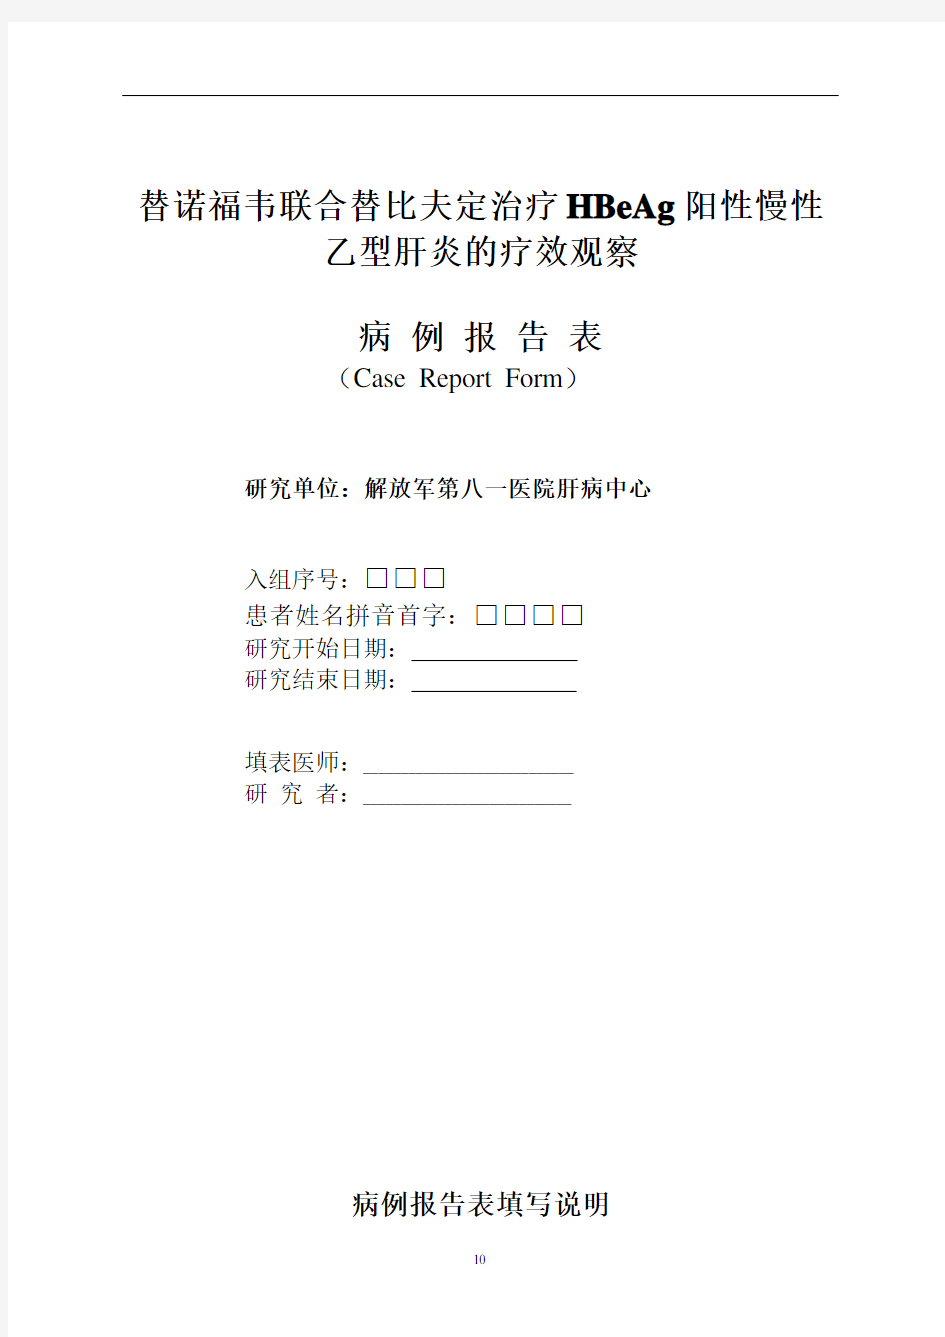 研究病历填写说明-中国临床试验注册中心